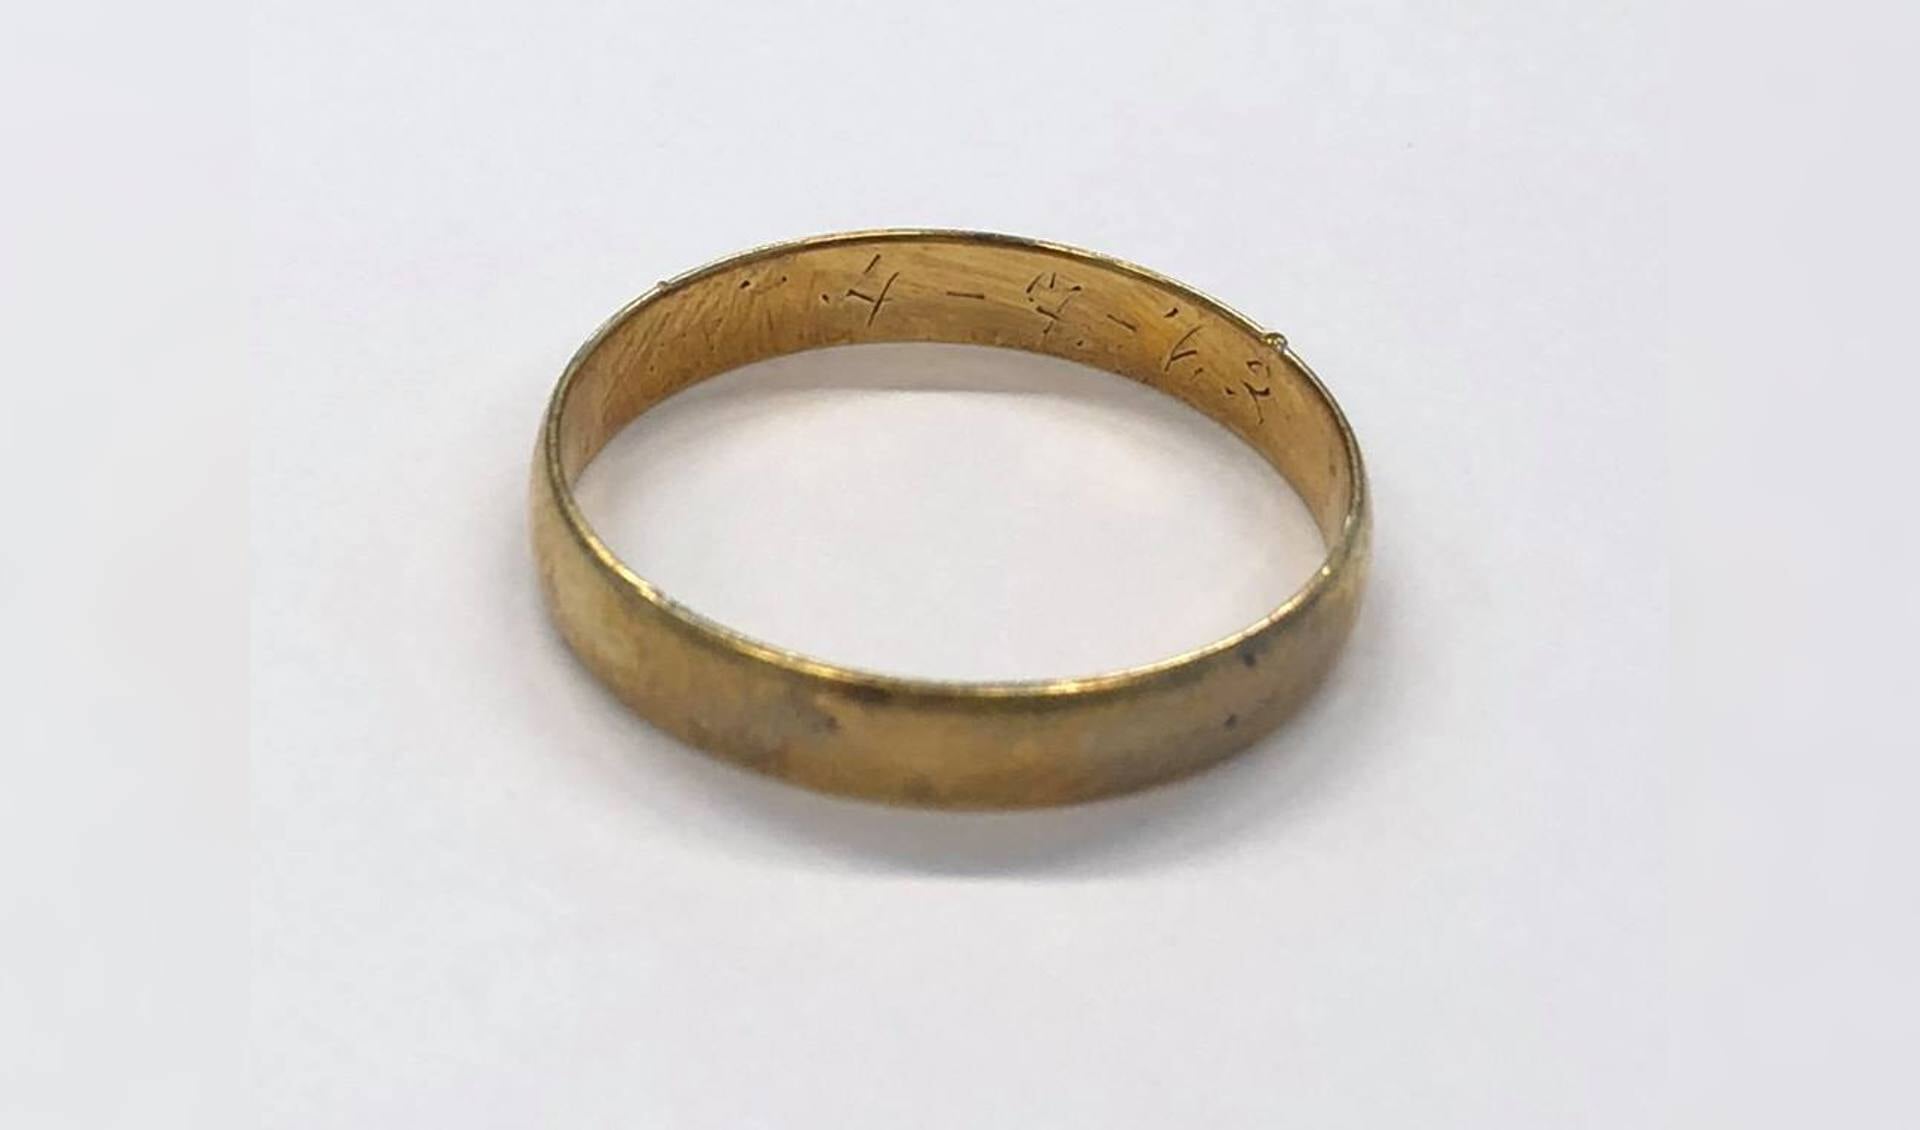 De goudkleurige ring waarvan de eigenaar gezocht wordt